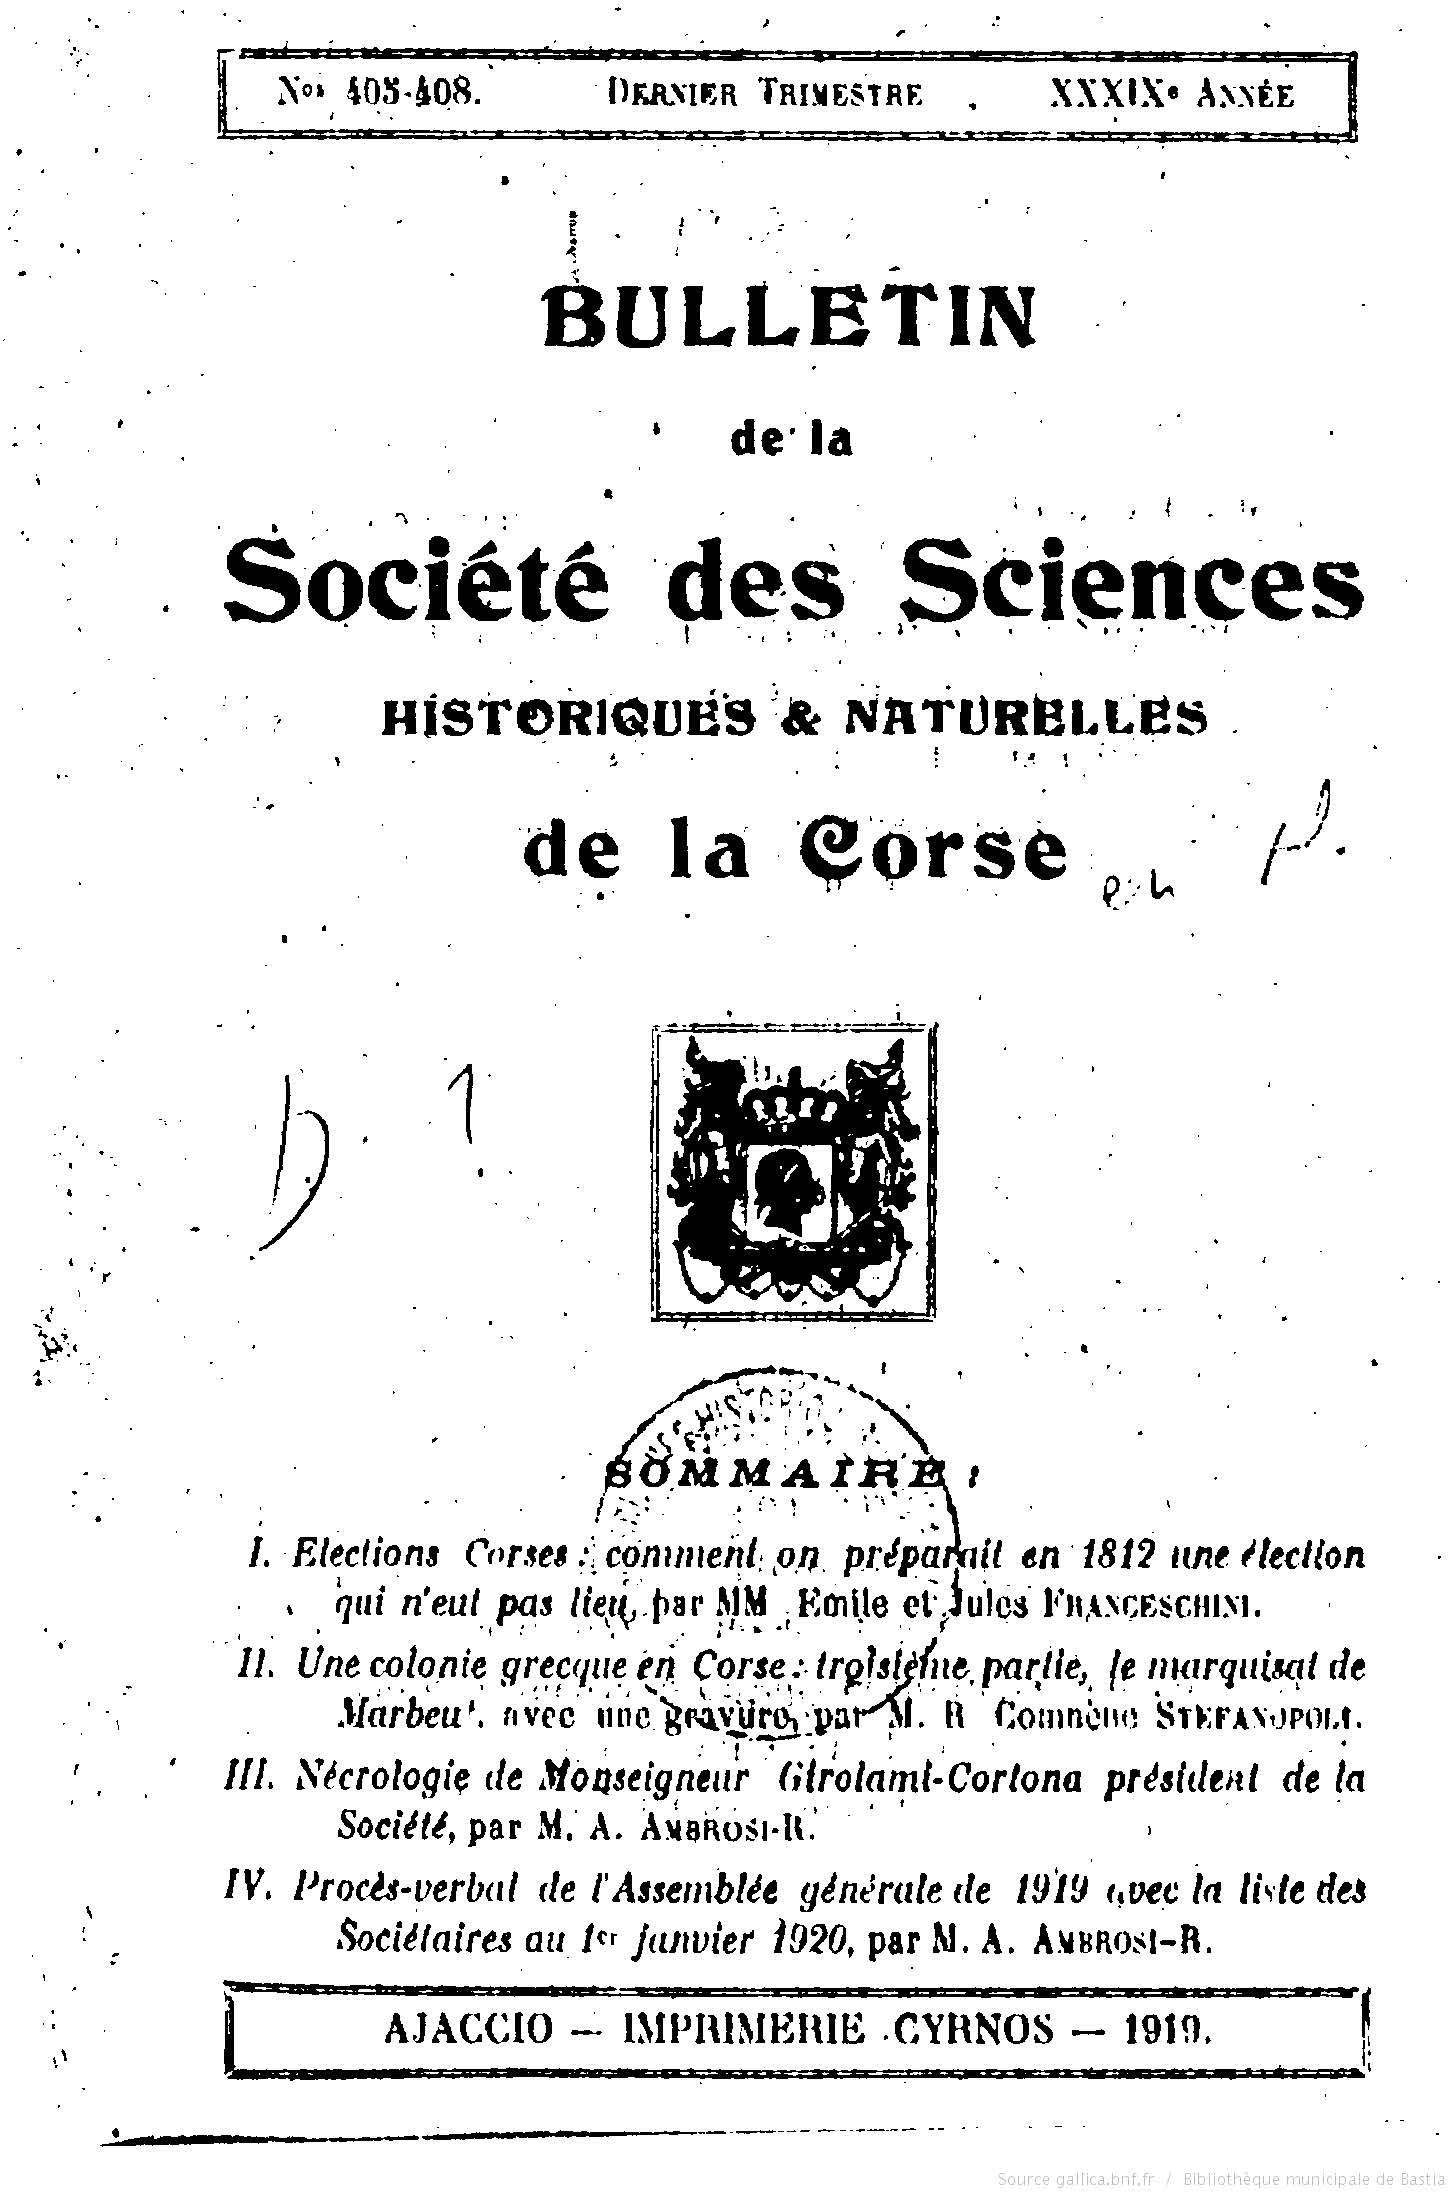 >Bulletin de la Société des Sciences Historiques et Naturelles de la Corse n° 405-408